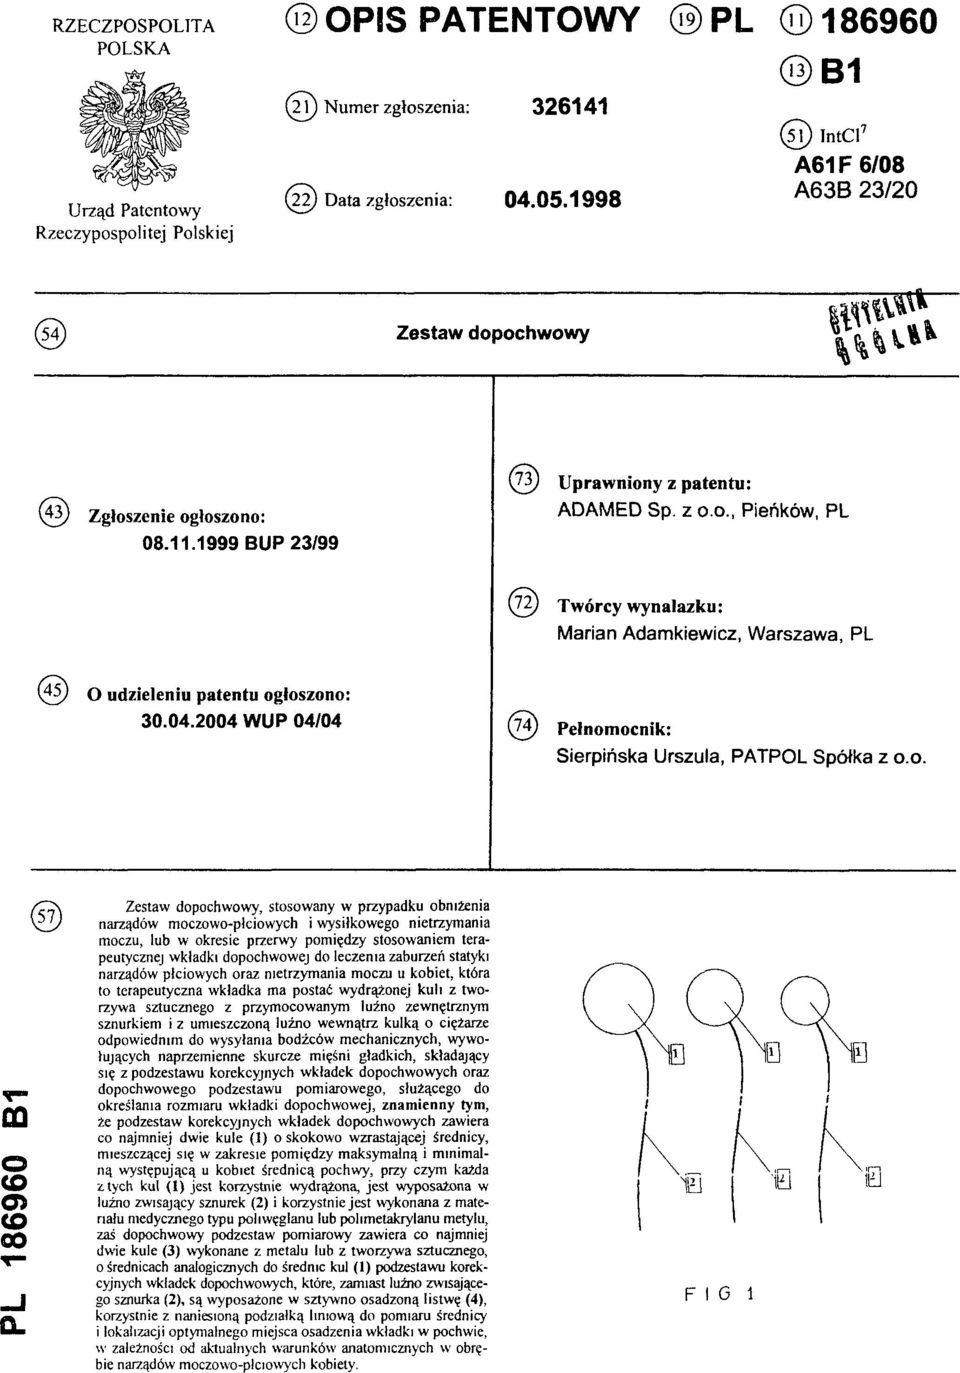 04.2004 WUP 04/04 (74) Pełnomocnik: Sierpińska Urszula, PATPOL Spółka z 0.0. PL 186960 B1 ( 5 7 ) Zestaw dopochwowy, stosowany w przypadku obniżenia narządów moczowo-płciowych i wysiłkowego